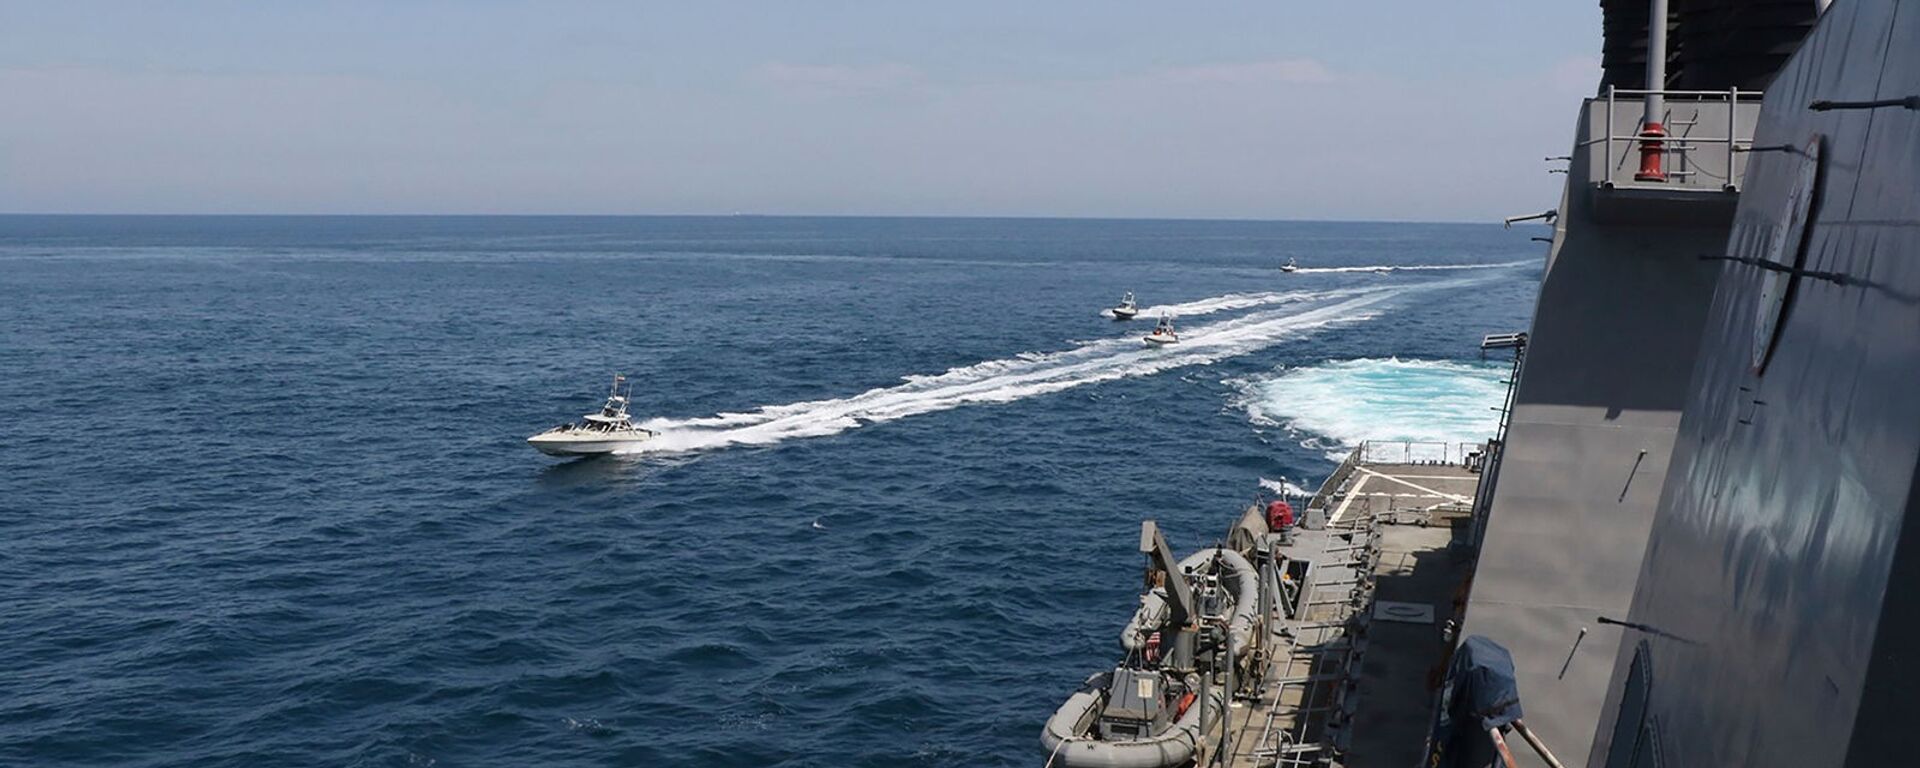 Иранские корабли Революционной гвардии плывут рядом с американскими военными кораблями в Персидском заливе близ Кувейта (15 апреля 2020). Персидский залив - Sputnik Армения, 1920, 20.12.2021